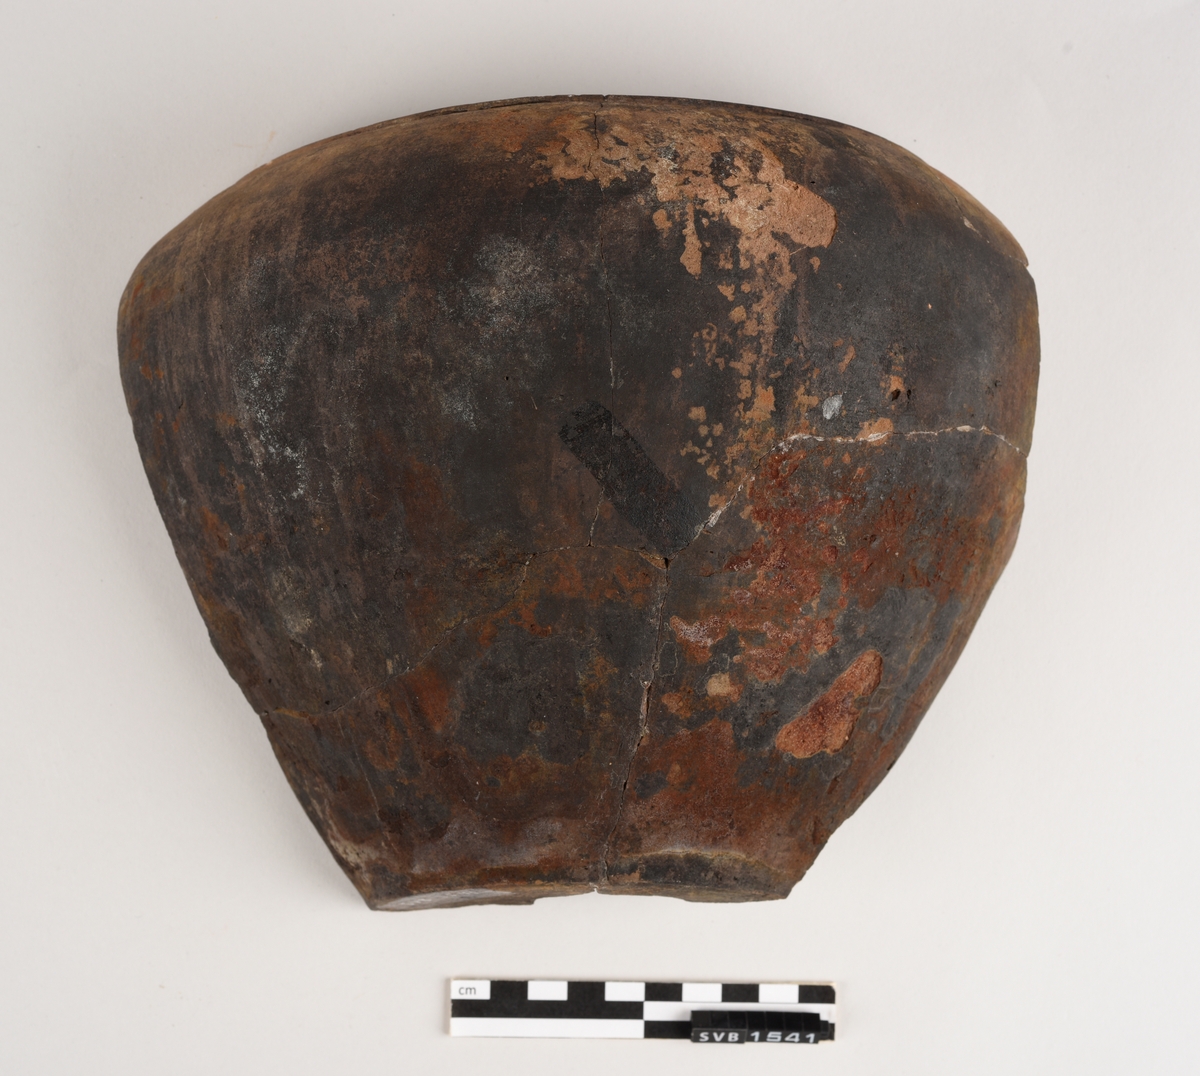 Krummet keramikkgjenstand bestående av fire fragment limt sammen. Innsiden er rødlig i farge med et sirkelformet mønstrer nederst på gjenstanden. Utsiden er svart i farge med rød/brune flekker.